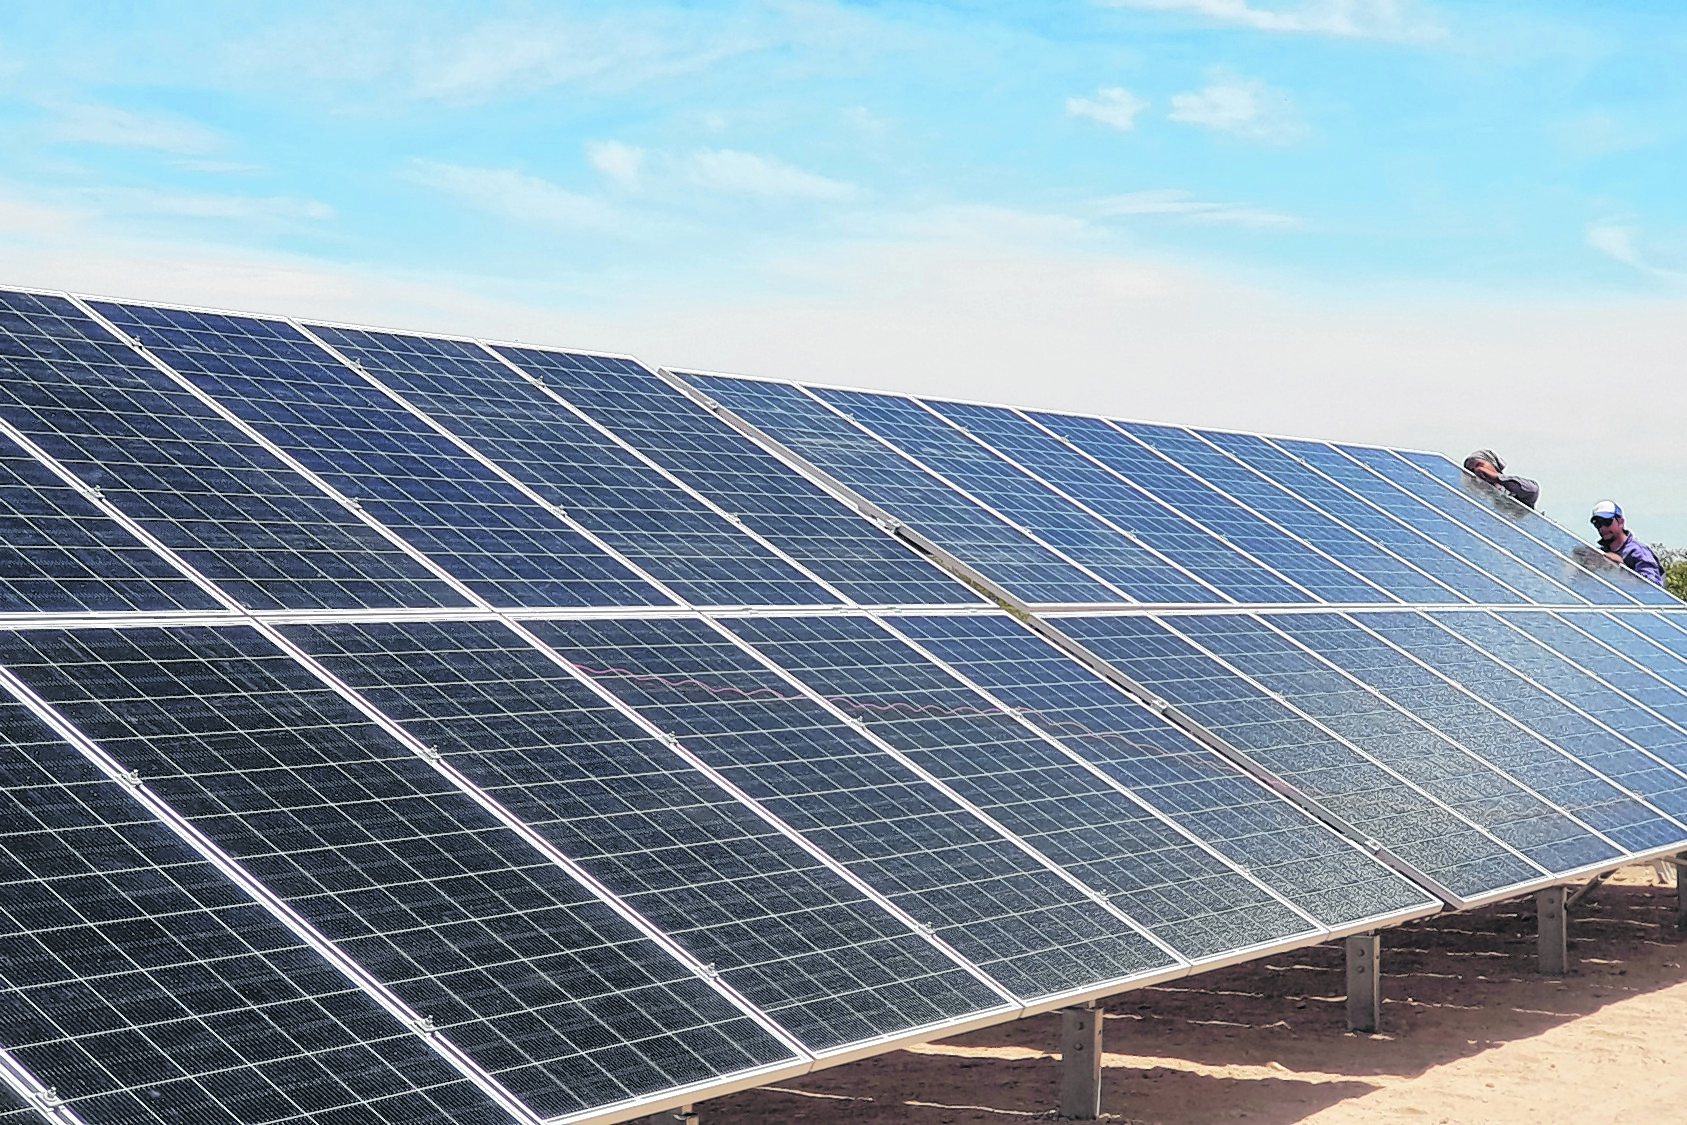 En mayo se espera inaugurar el primer parque solar de Neuquén y avanzar en la exportación de energías limpias a Chile.